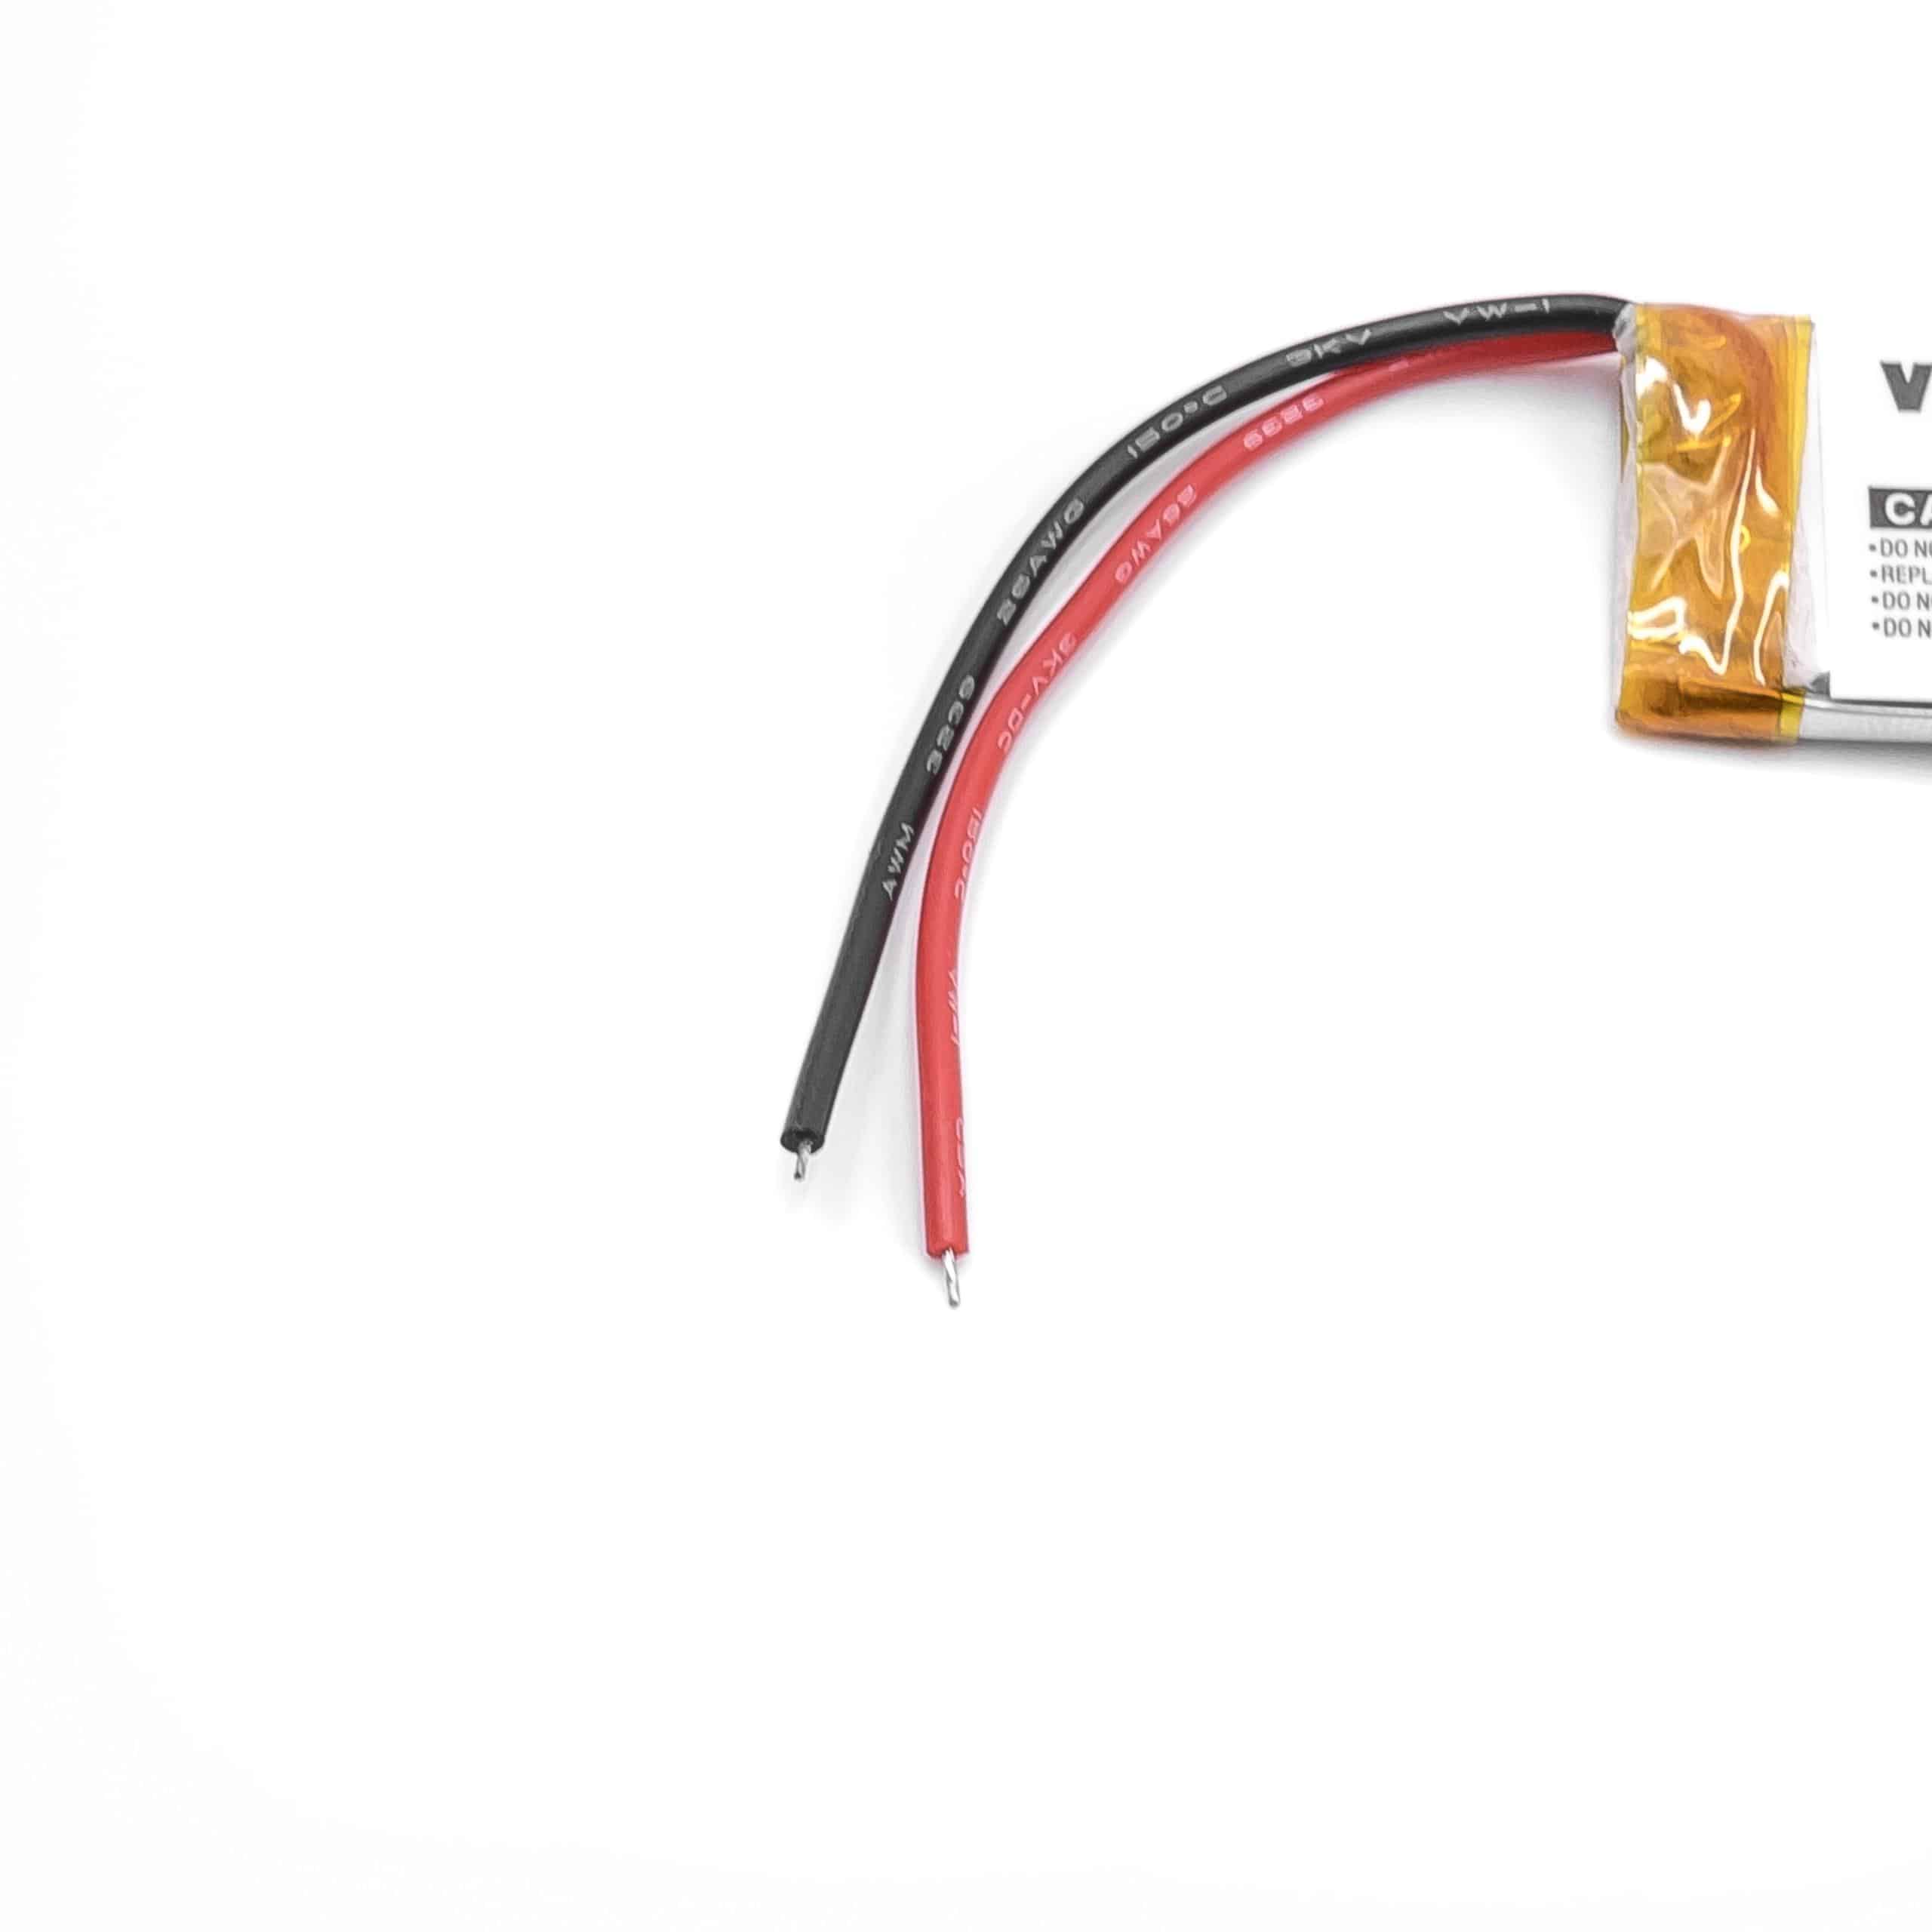 Wireless Headset Battery Replacement for Cardo WW452050PL_C, WW452050PL - 320mAh 3.7V Li-polymer